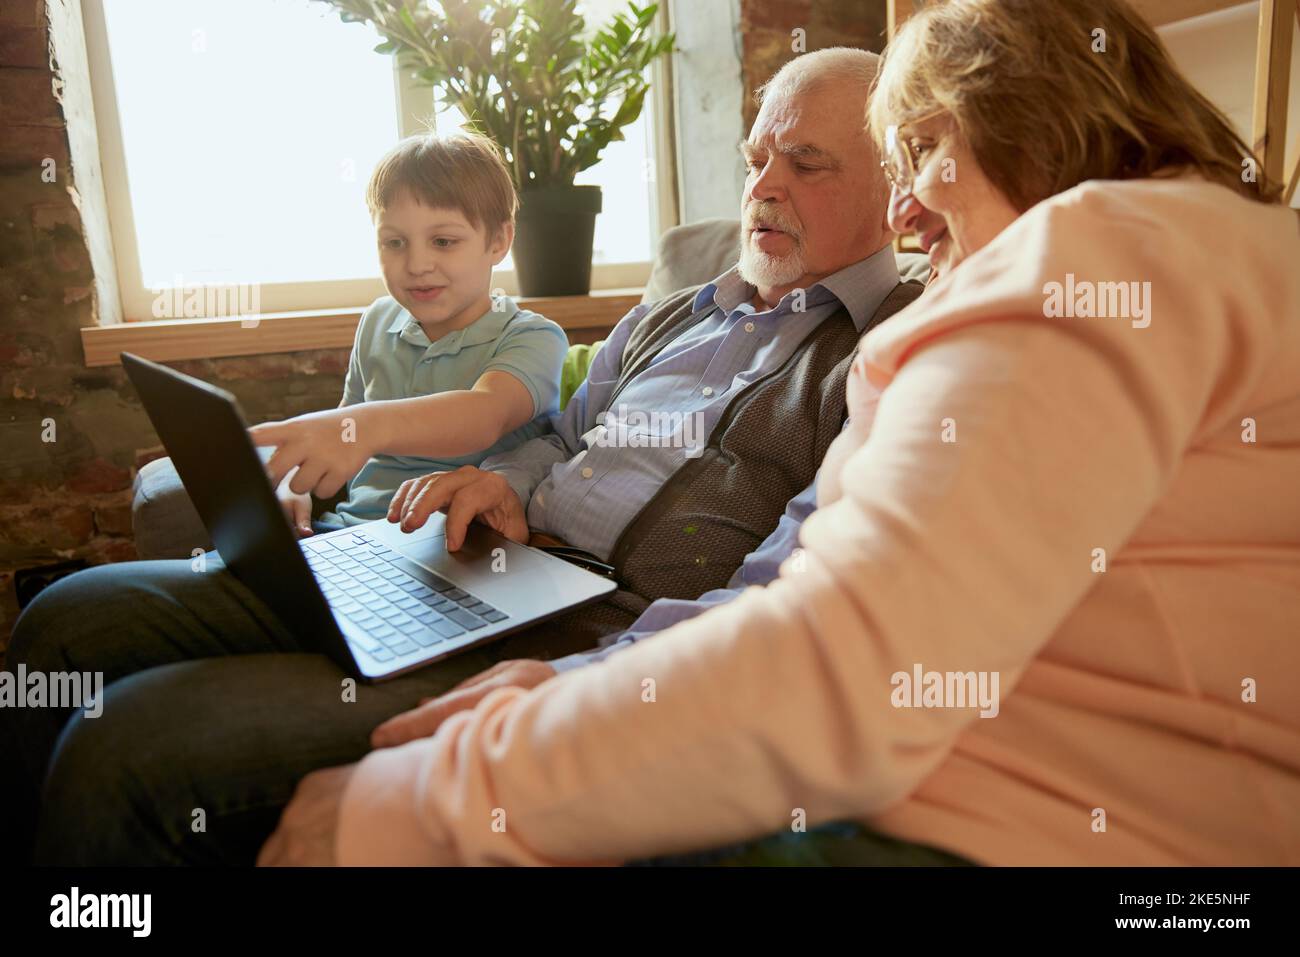 Lebensporträt einer freundlichen Familie, Großelterns und ihres Enkels, die auf dem Sofa sitzen und Zeit miteinander verbringen, mit modernen Gadgets, reden, studieren Stockfoto